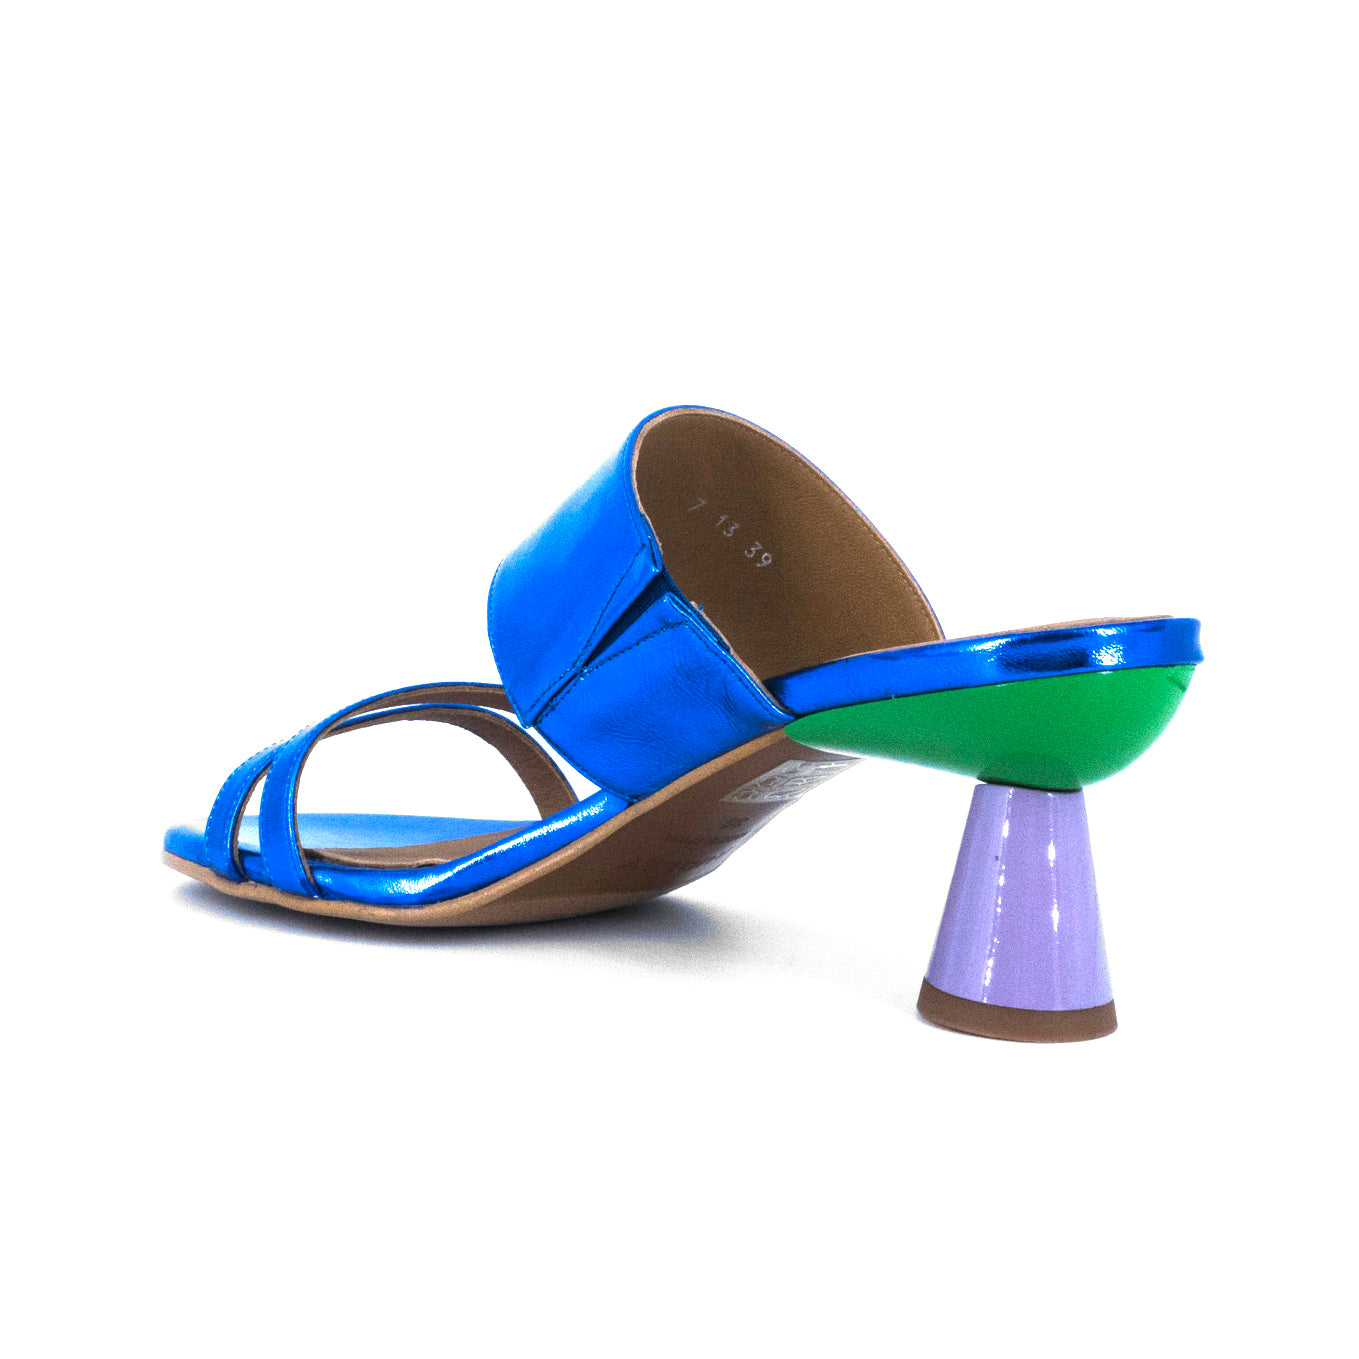 Sandalias De La Marca Audley Para Mujer Modelo Tacón Bavaro En Color Azul